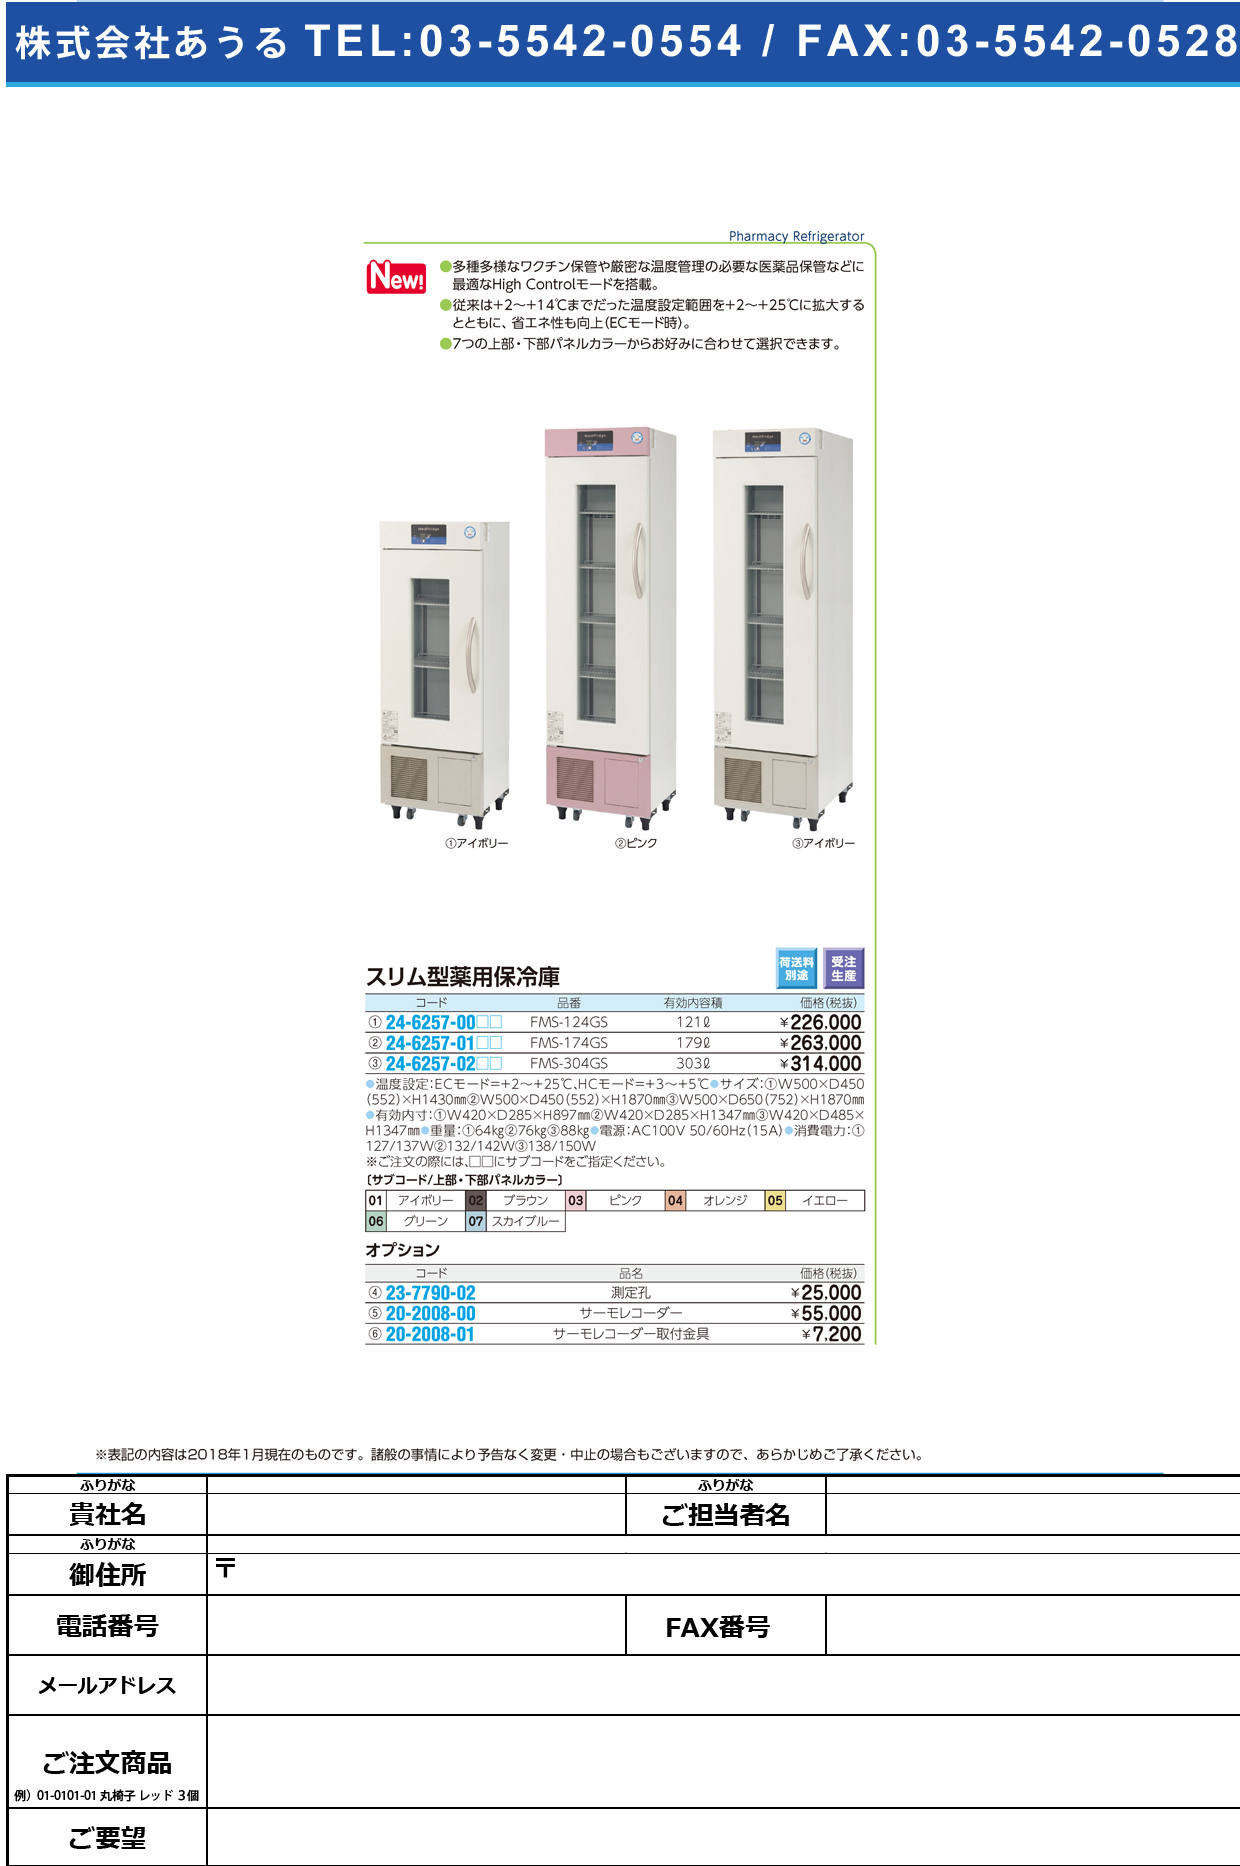 (24-6257-00)スリム型薬用保冷庫 FMS-124GS(121L) ｽﾘﾑｶﾞﾀﾔｸﾖｳﾎﾚｲｺ アイボリー（標準色）(福島工業)【1台単位】【2018年カタログ商品】